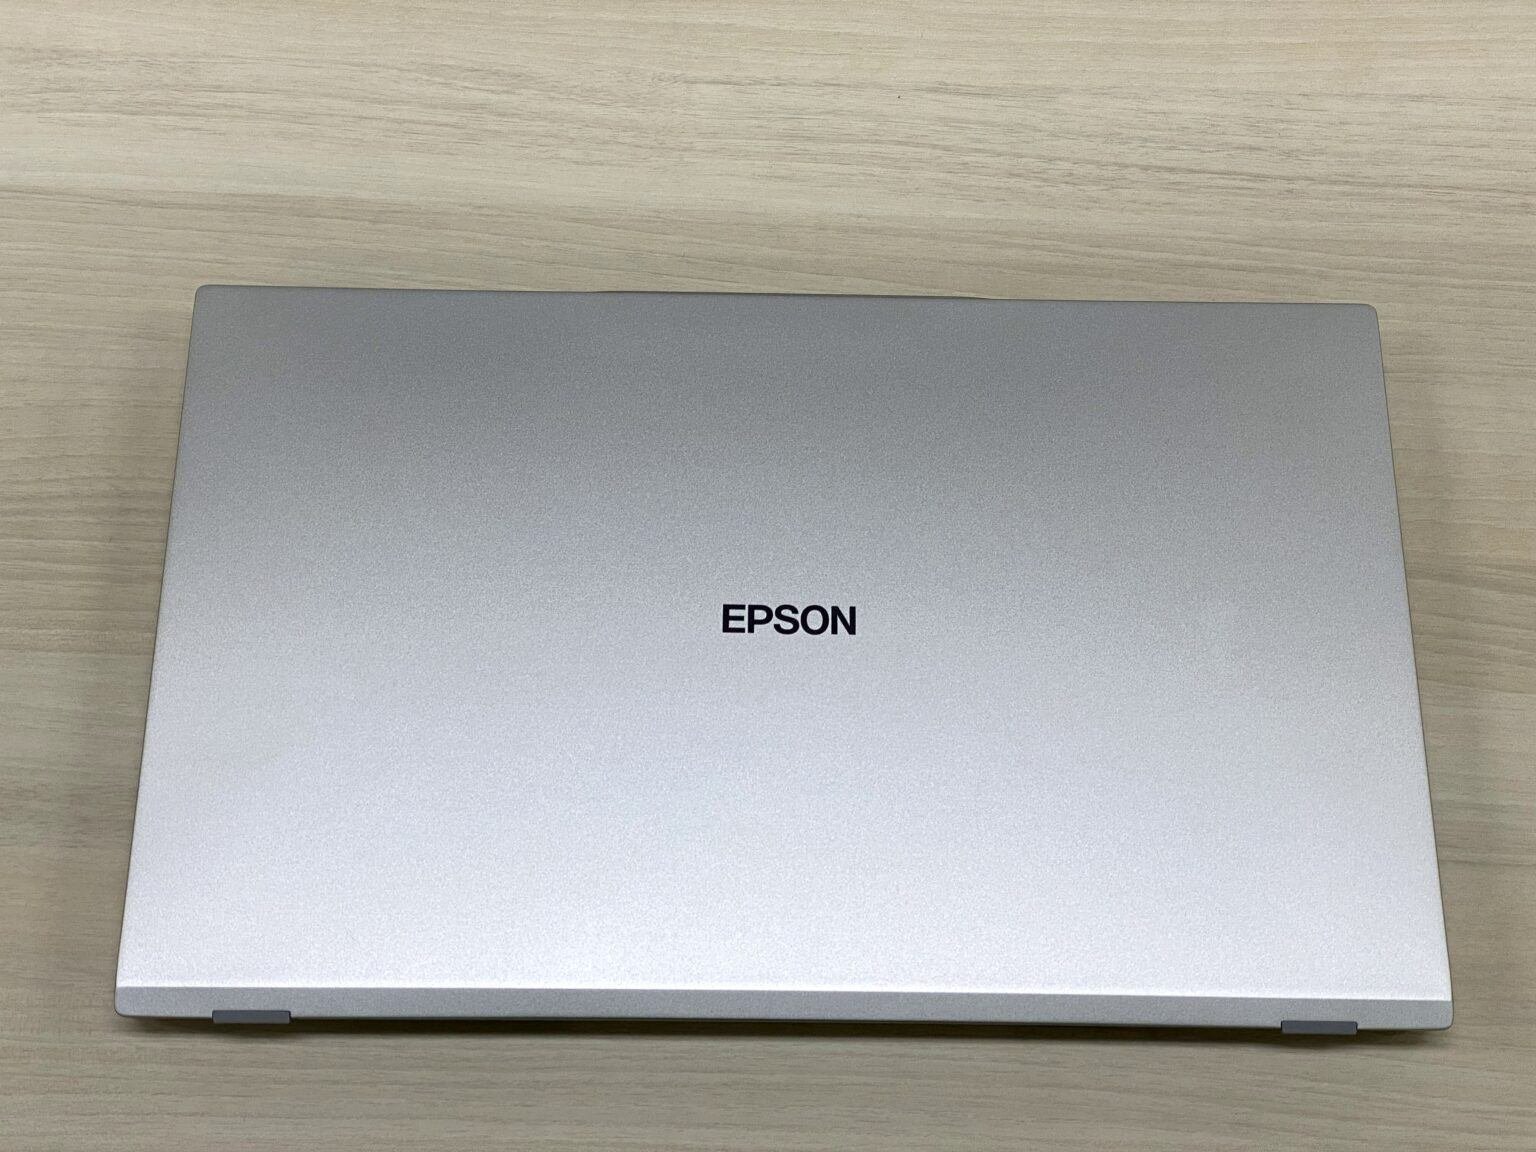 【美品】EPSON ノートパソコン Endeavor windows mac